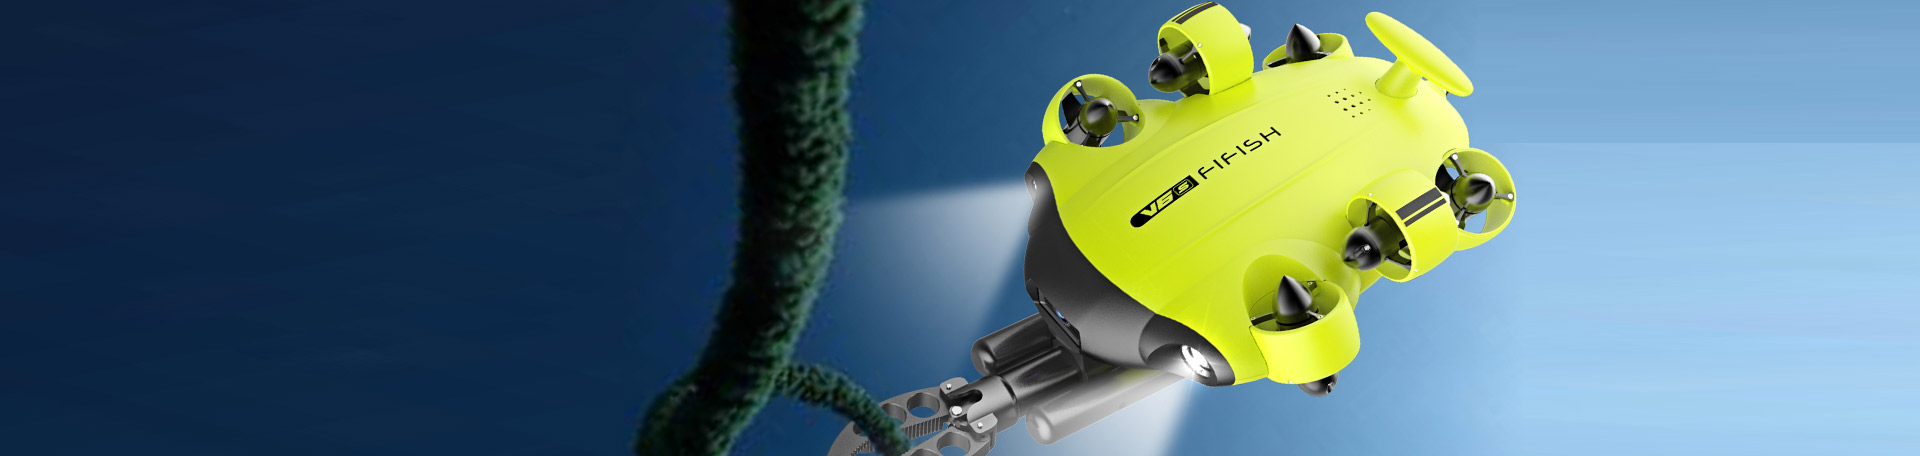 Underwater drones